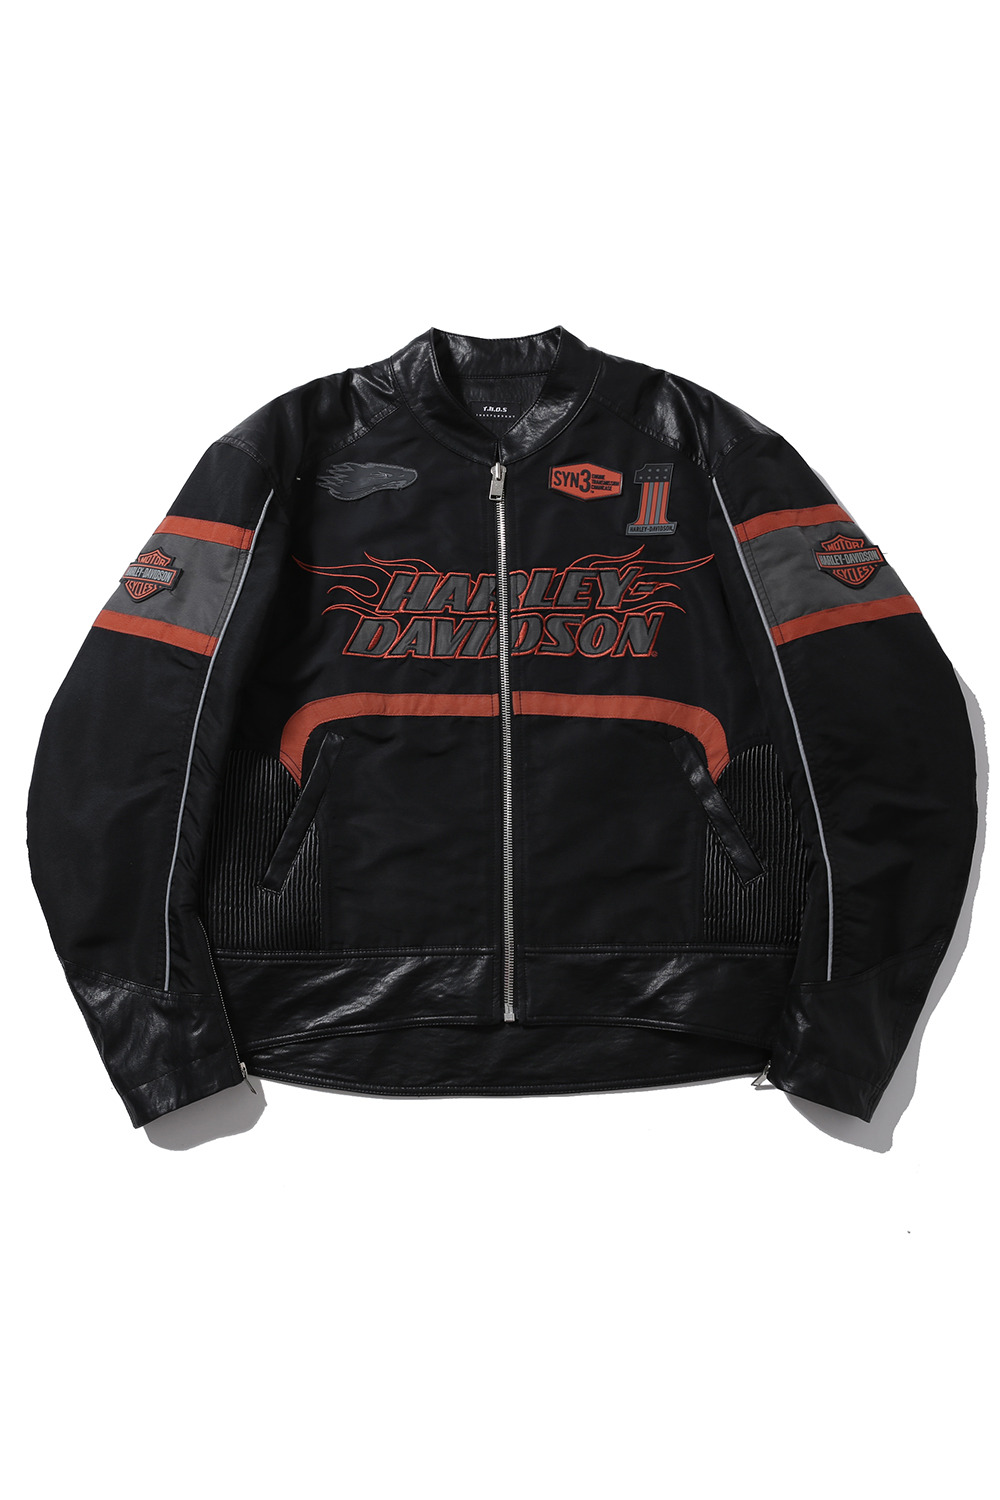 Harley Davidson detail rider jacket